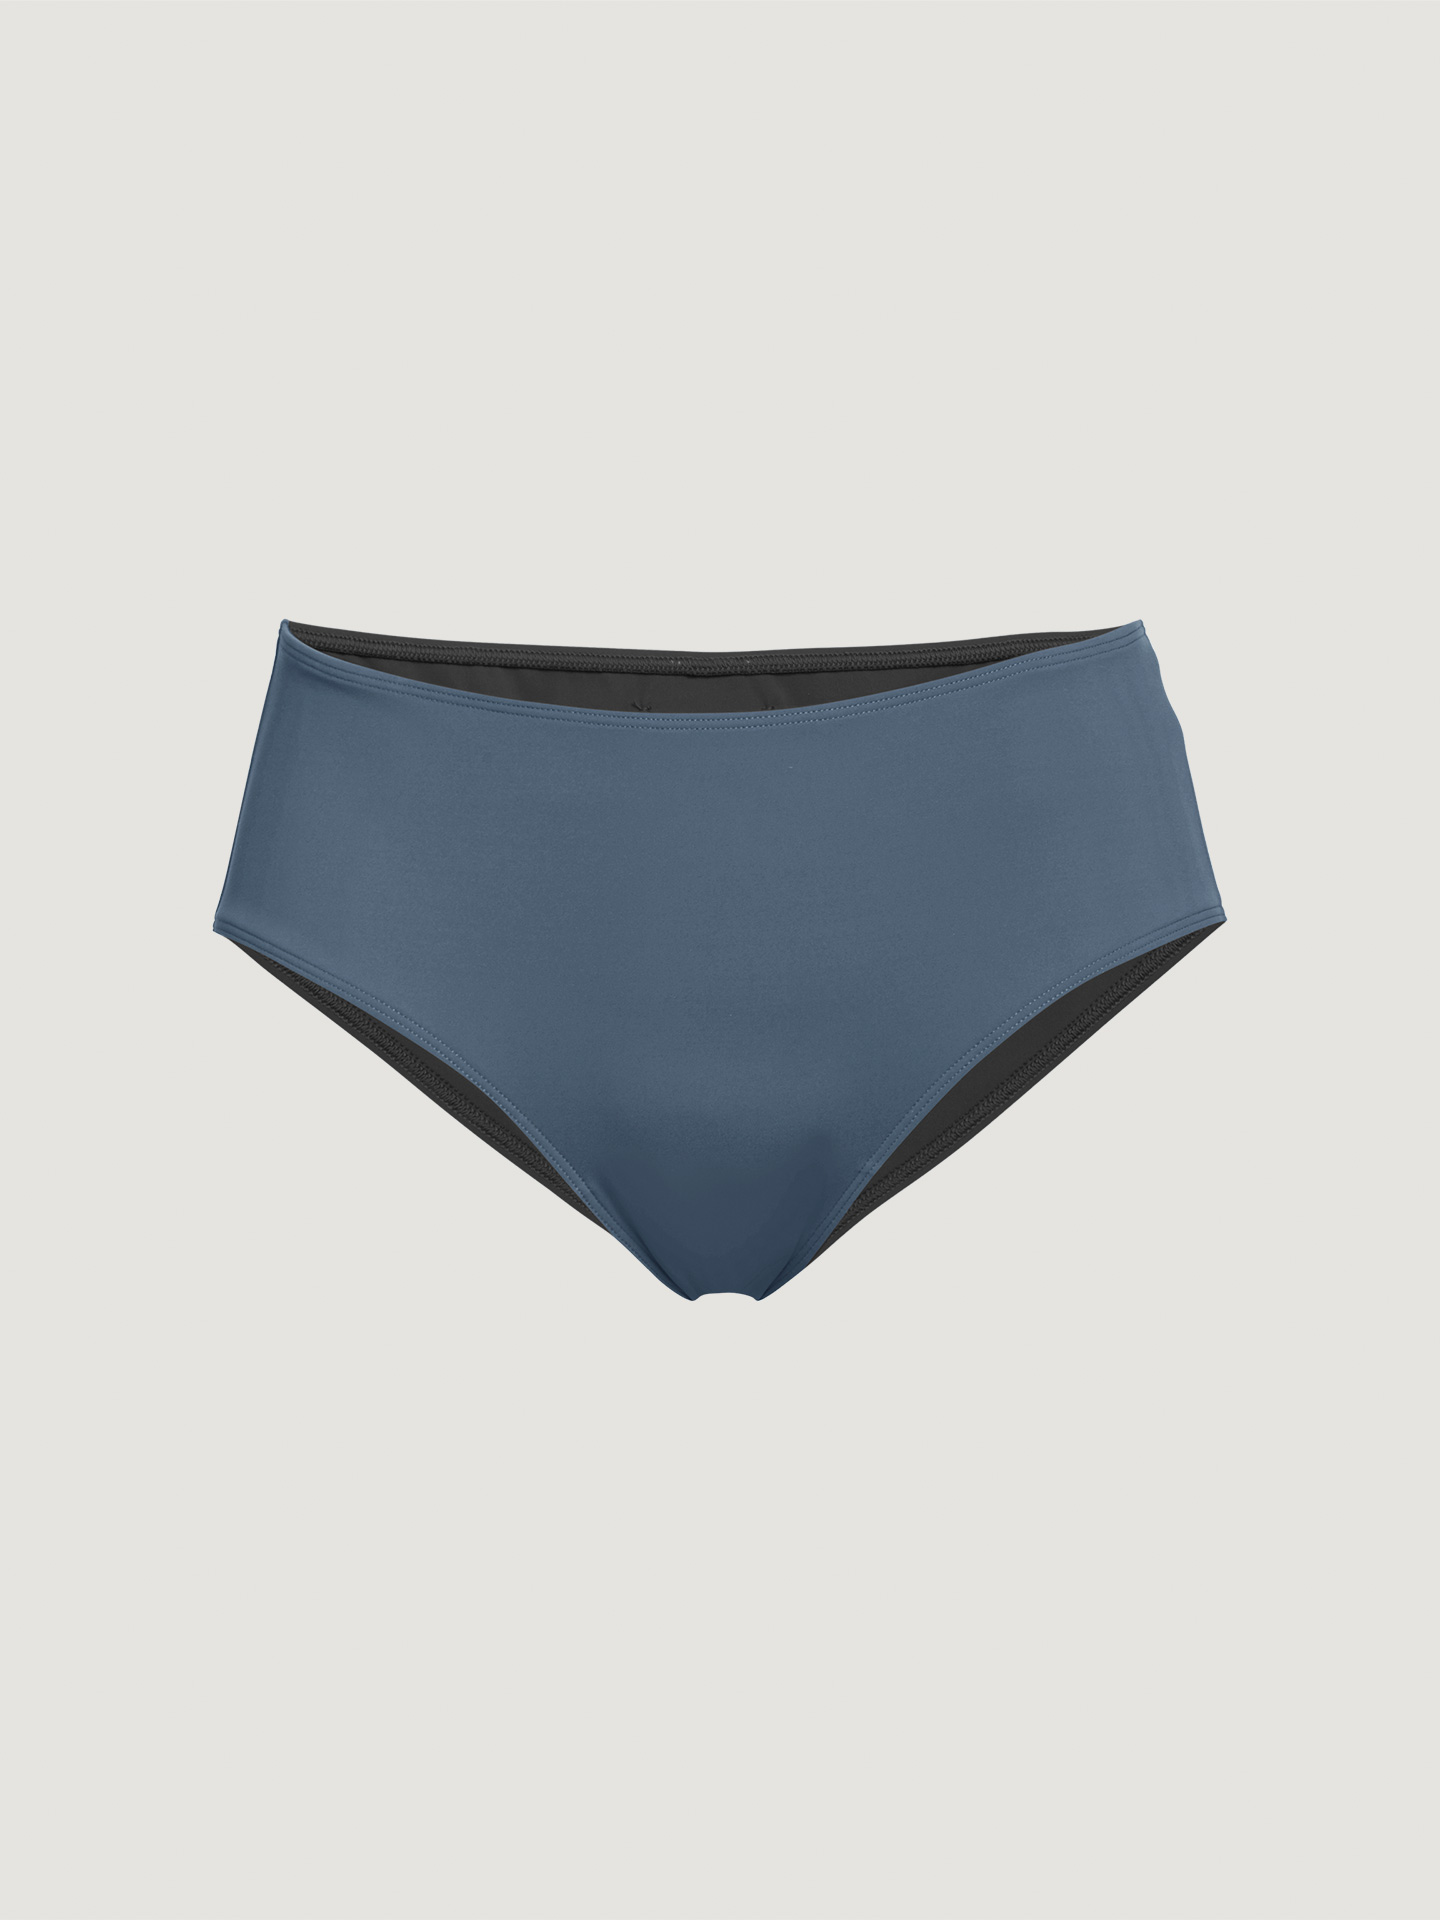 Wolford - Reversible Beach Shorts, Frau, pacific blue/black, Größe: S günstig online kaufen